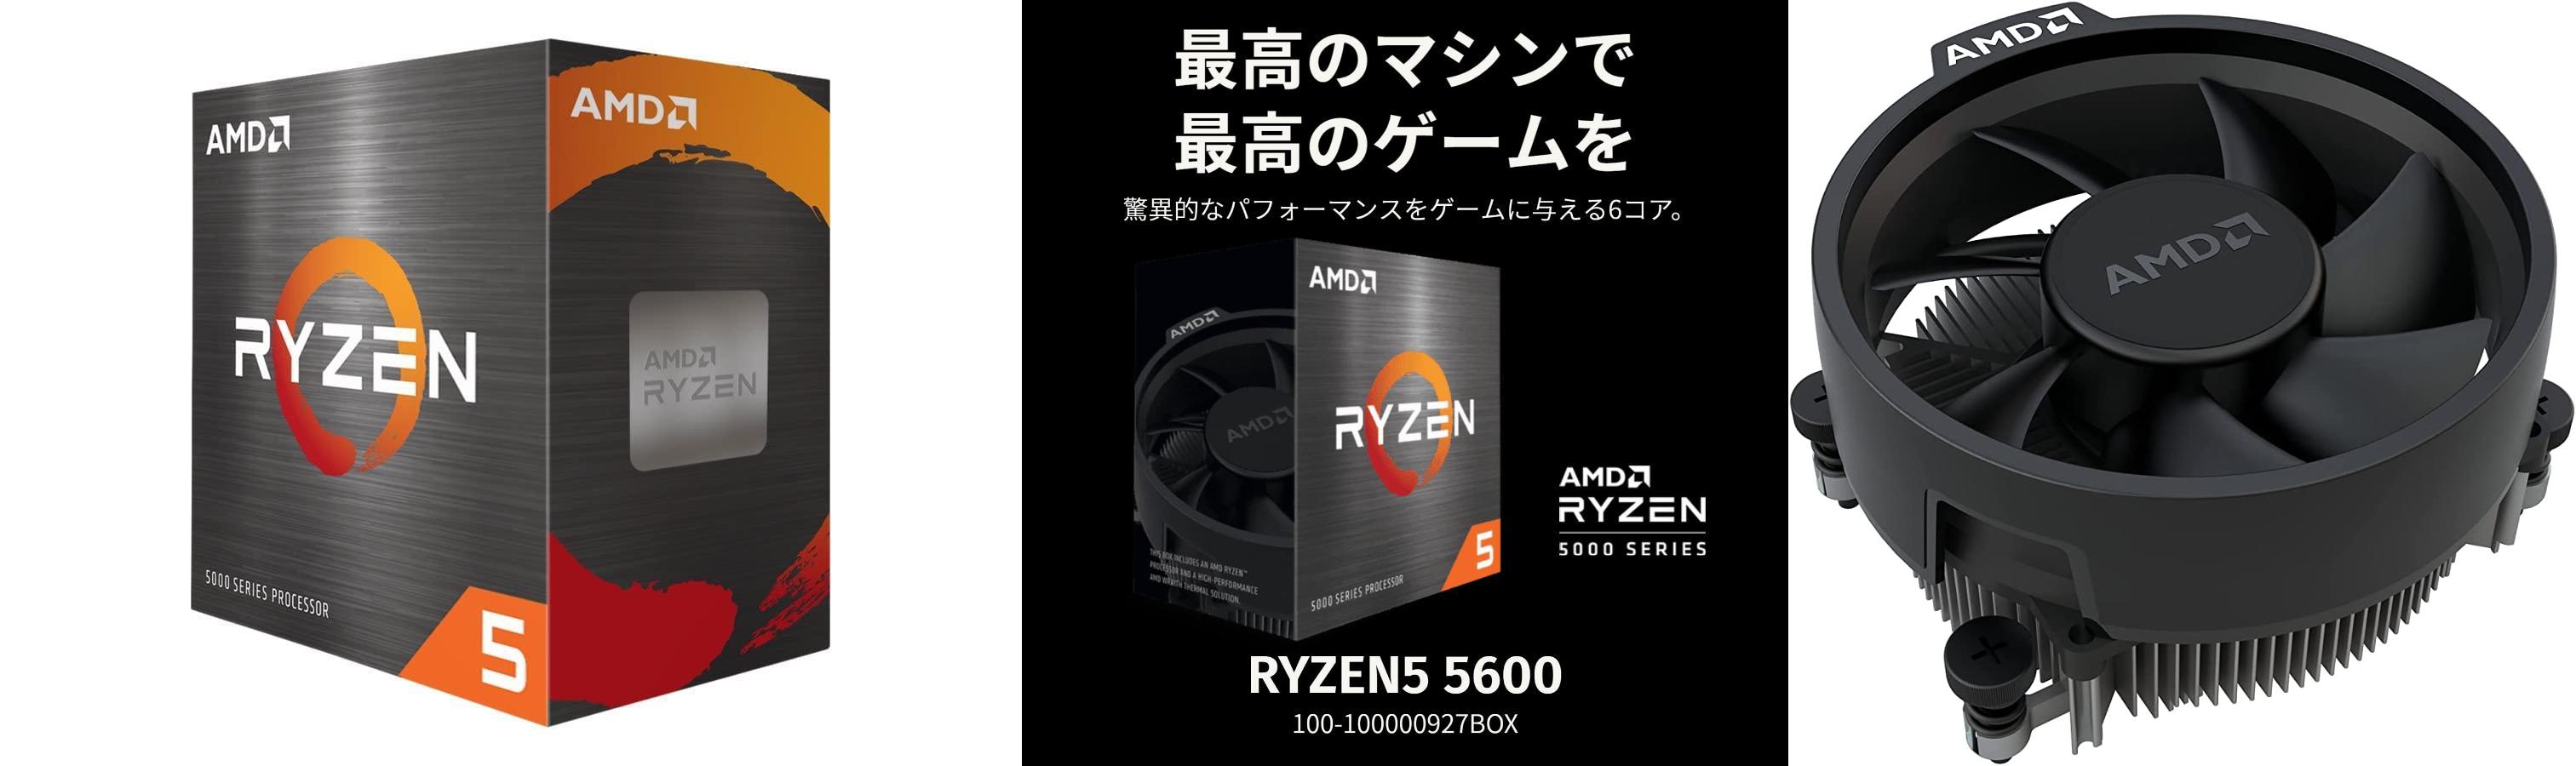 Descubre el potente AMD Ryzen 5 5600 con ventilador Wraith Stealth en un solo paquete